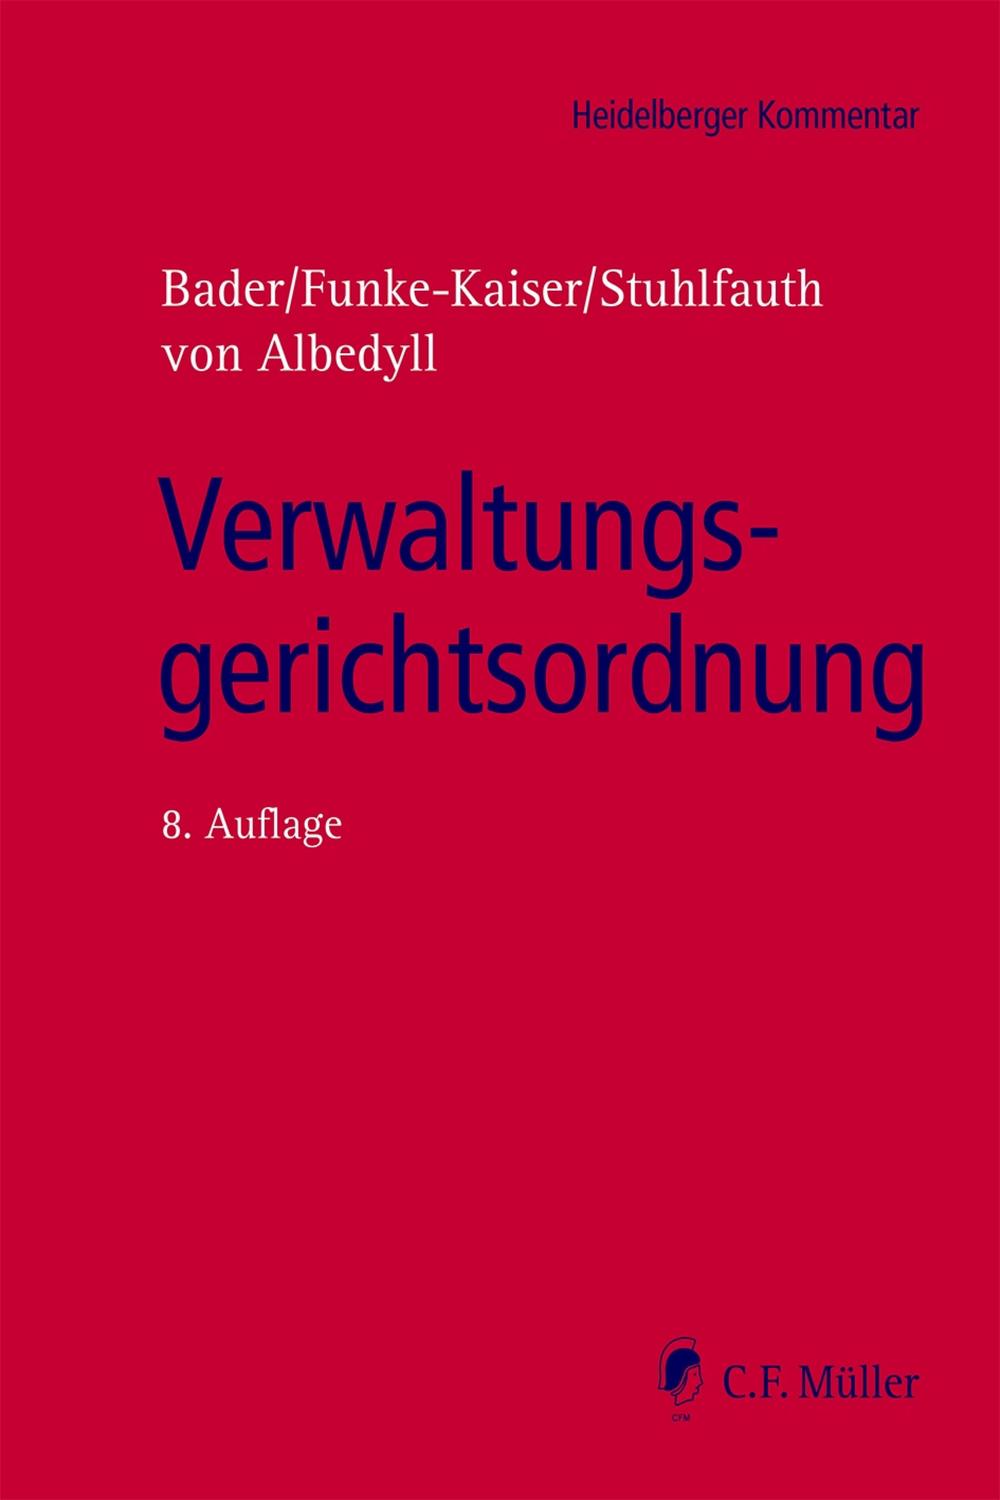 Verwaltungsgerichtsordnung, eBook - Jörg von von Albedyll, Michael Funke-Kaiser, Johann Bader, Thomas Stuhlfauth, Bader